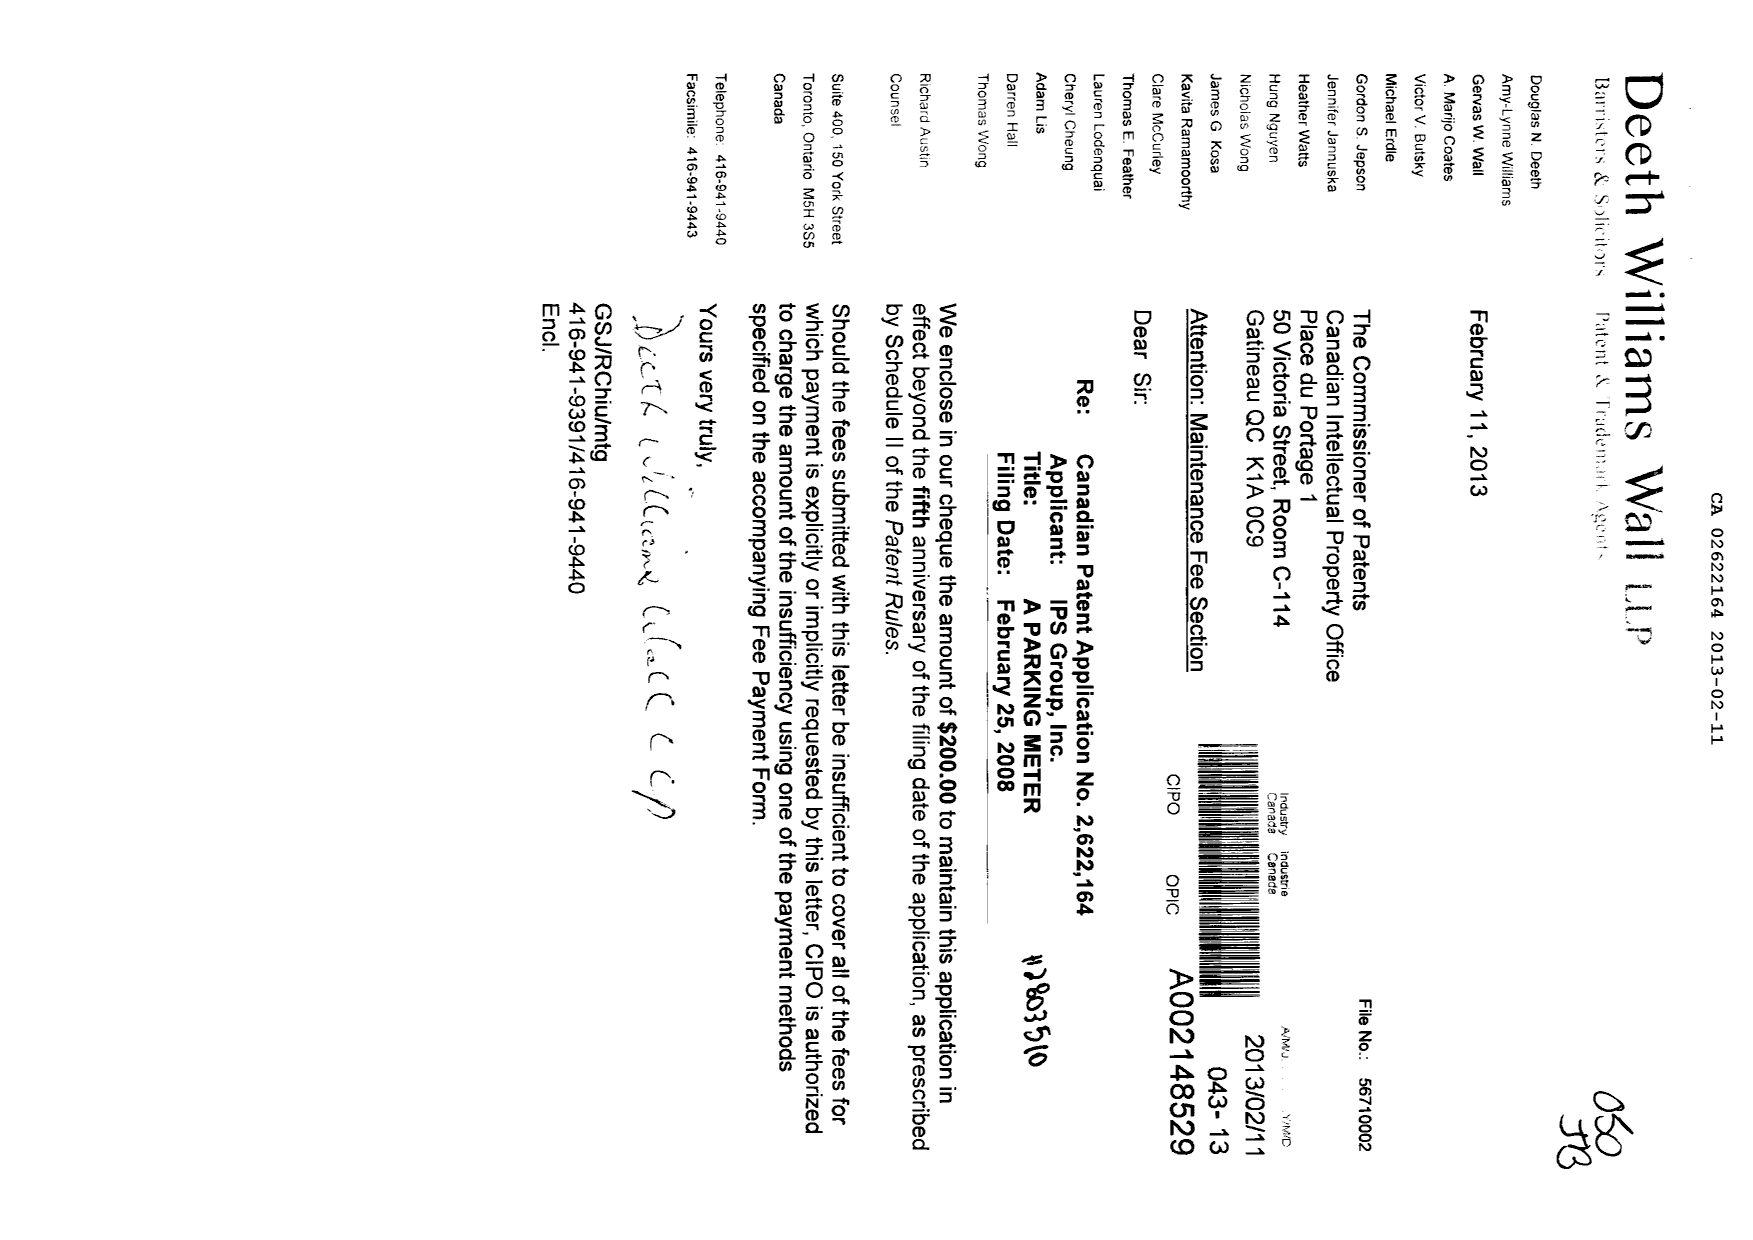 Document de brevet canadien 2622164. Taxes 20121211. Image 1 de 1